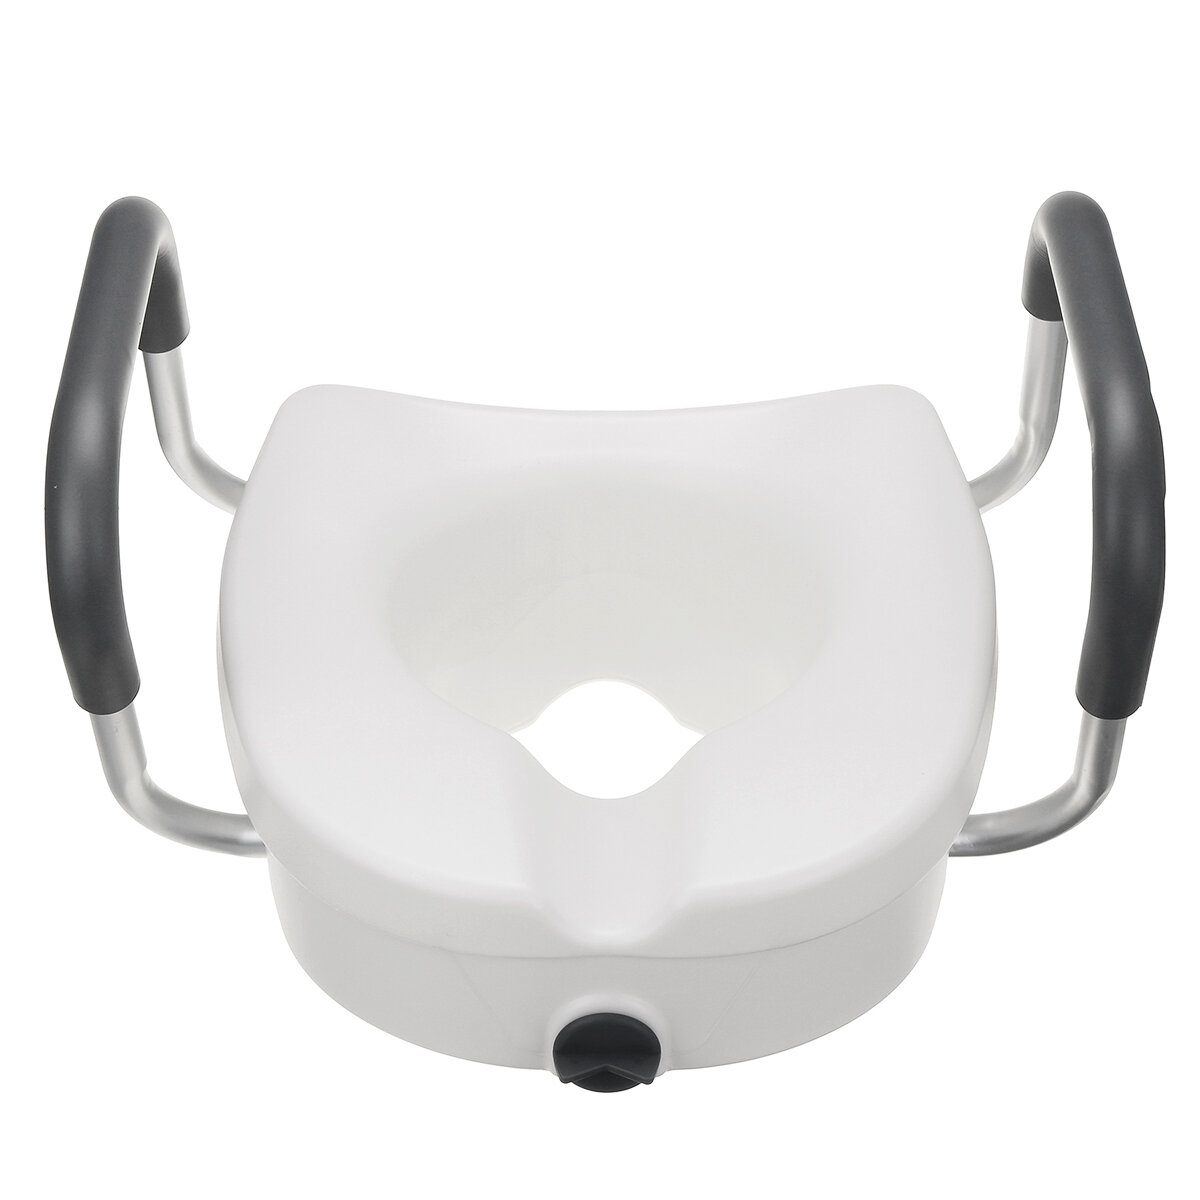 Verwijderbare verhoogde toiletbril met armleuningen Gevoerde hulpmiddelen voor gehandicapten Ouderen